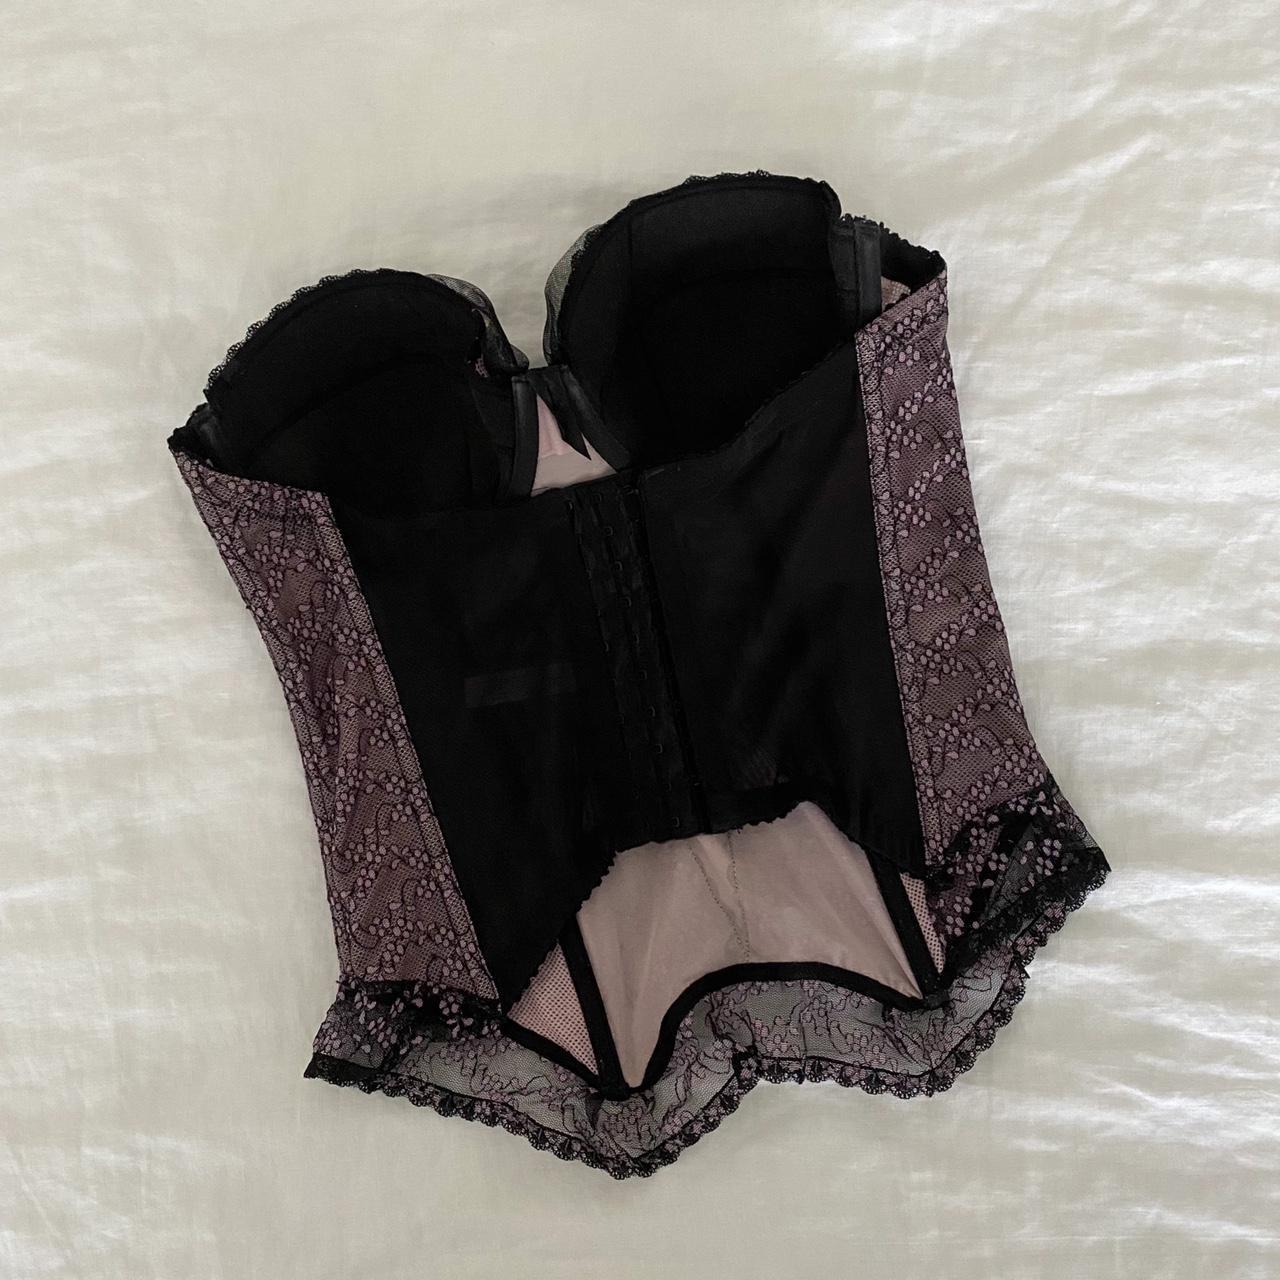 Strapless black Lace panel bustier corset top. Has - Depop